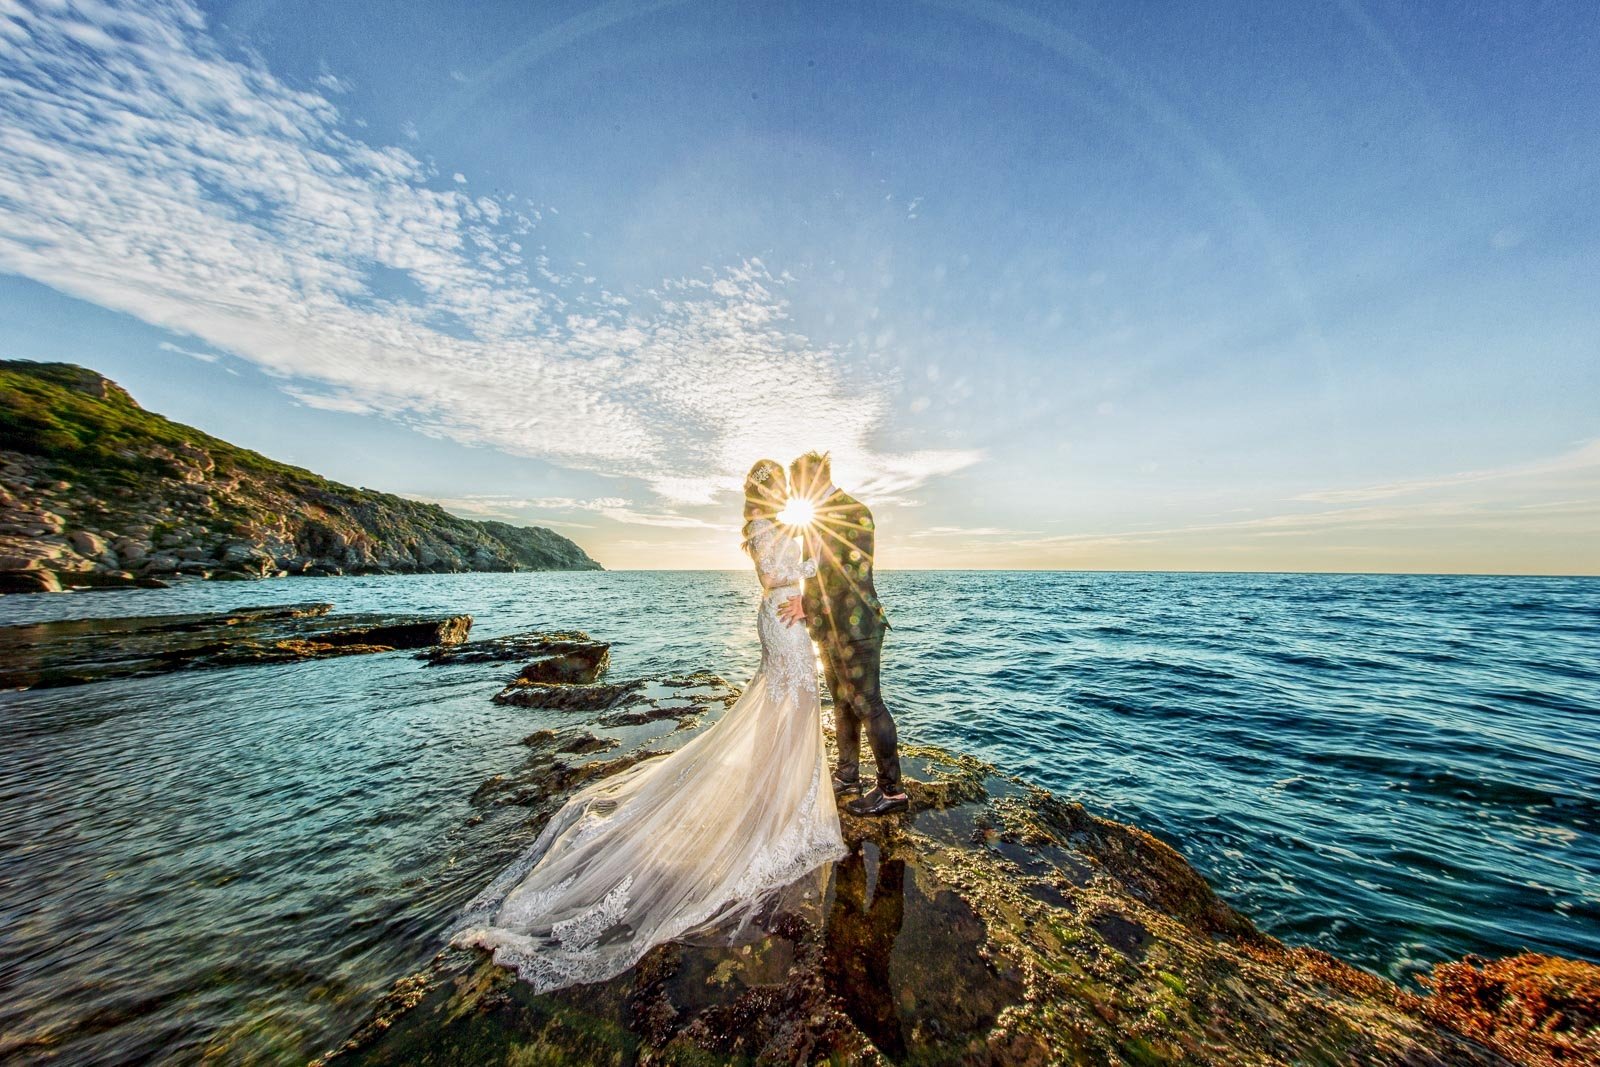 Concept chụp ảnh cưới biển sẽ là một trải nghiệm đầy thú vị dành cho các cặp đôi mong muốn có cảm giác tự do đầy mênh mông trên bãi biển. Với những bức hình đẹp như tranh, các bạn sẽ luôn giữ được những kỷ niệm tuyệt vời nhất của mình. Hãy xem hình ảnh để cảm nhận ngay nào!